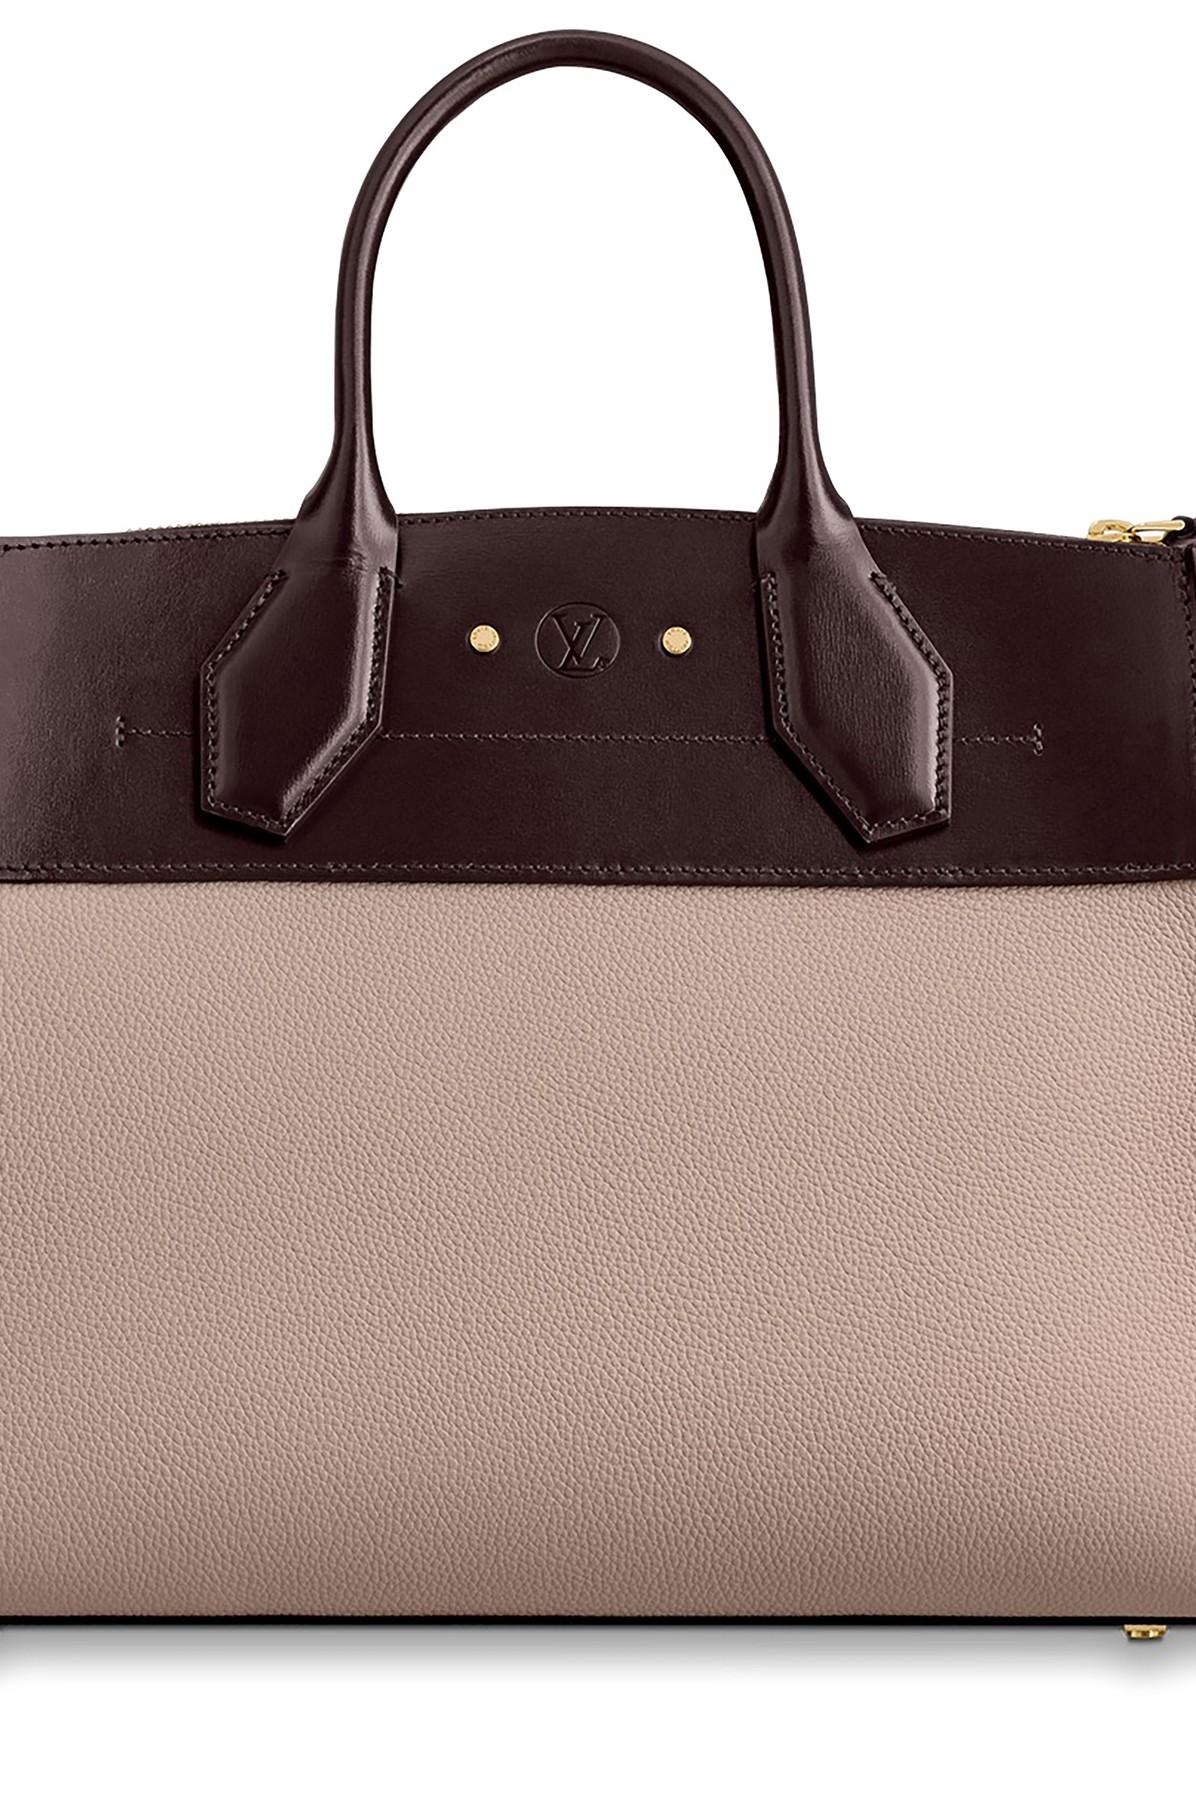 Louis Vuitton, Bags, Authentic Louis Vuitton City Steamer Mm